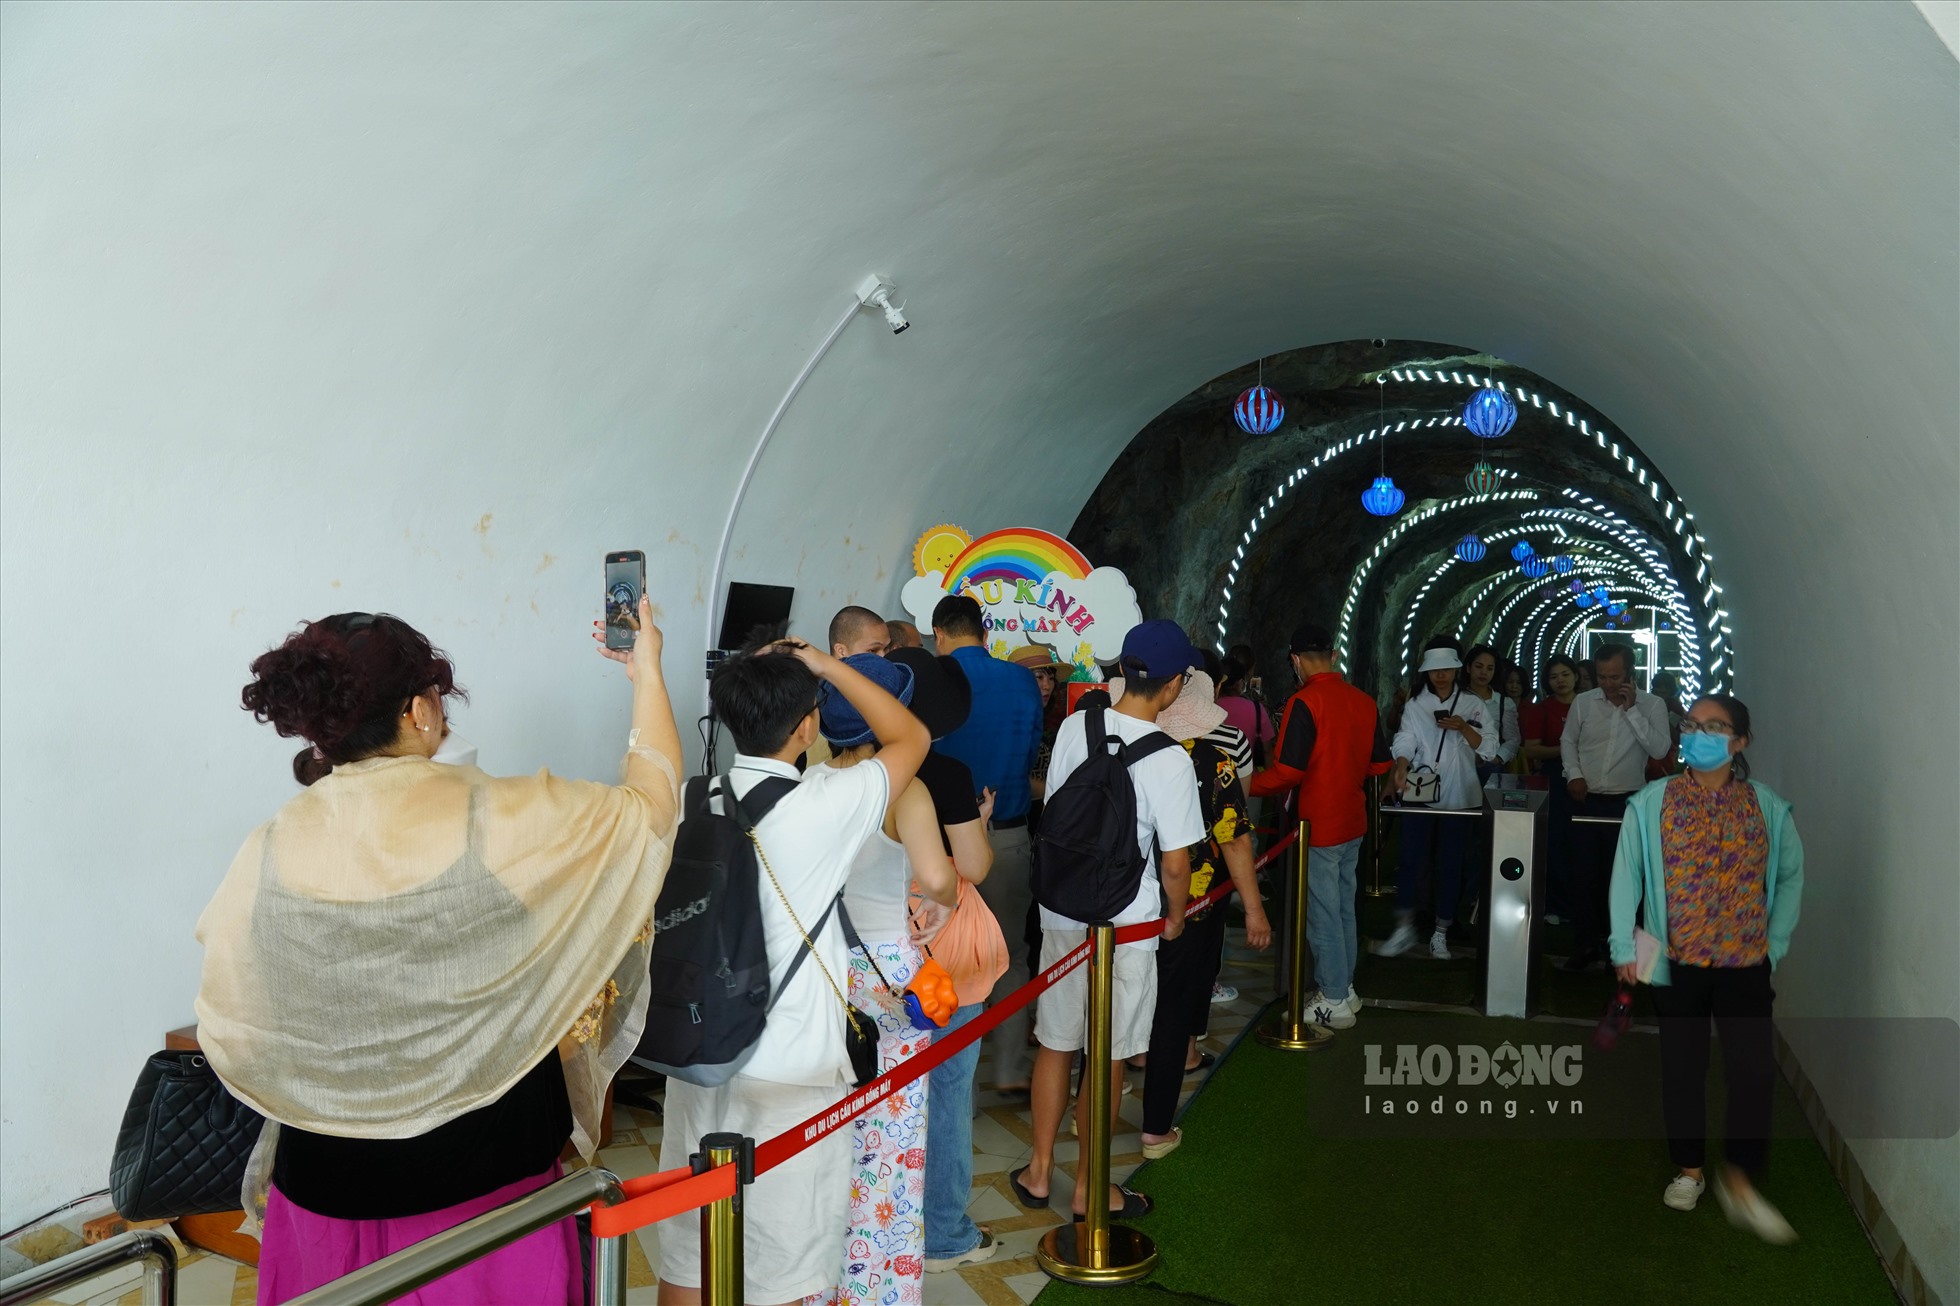 Để lên đến Cầu kính Rồng Mây để trải nghiệm cảm giác mạnh, du khách sẽ được đi vào đường hầm và di chuyển theo cầu thang máy.